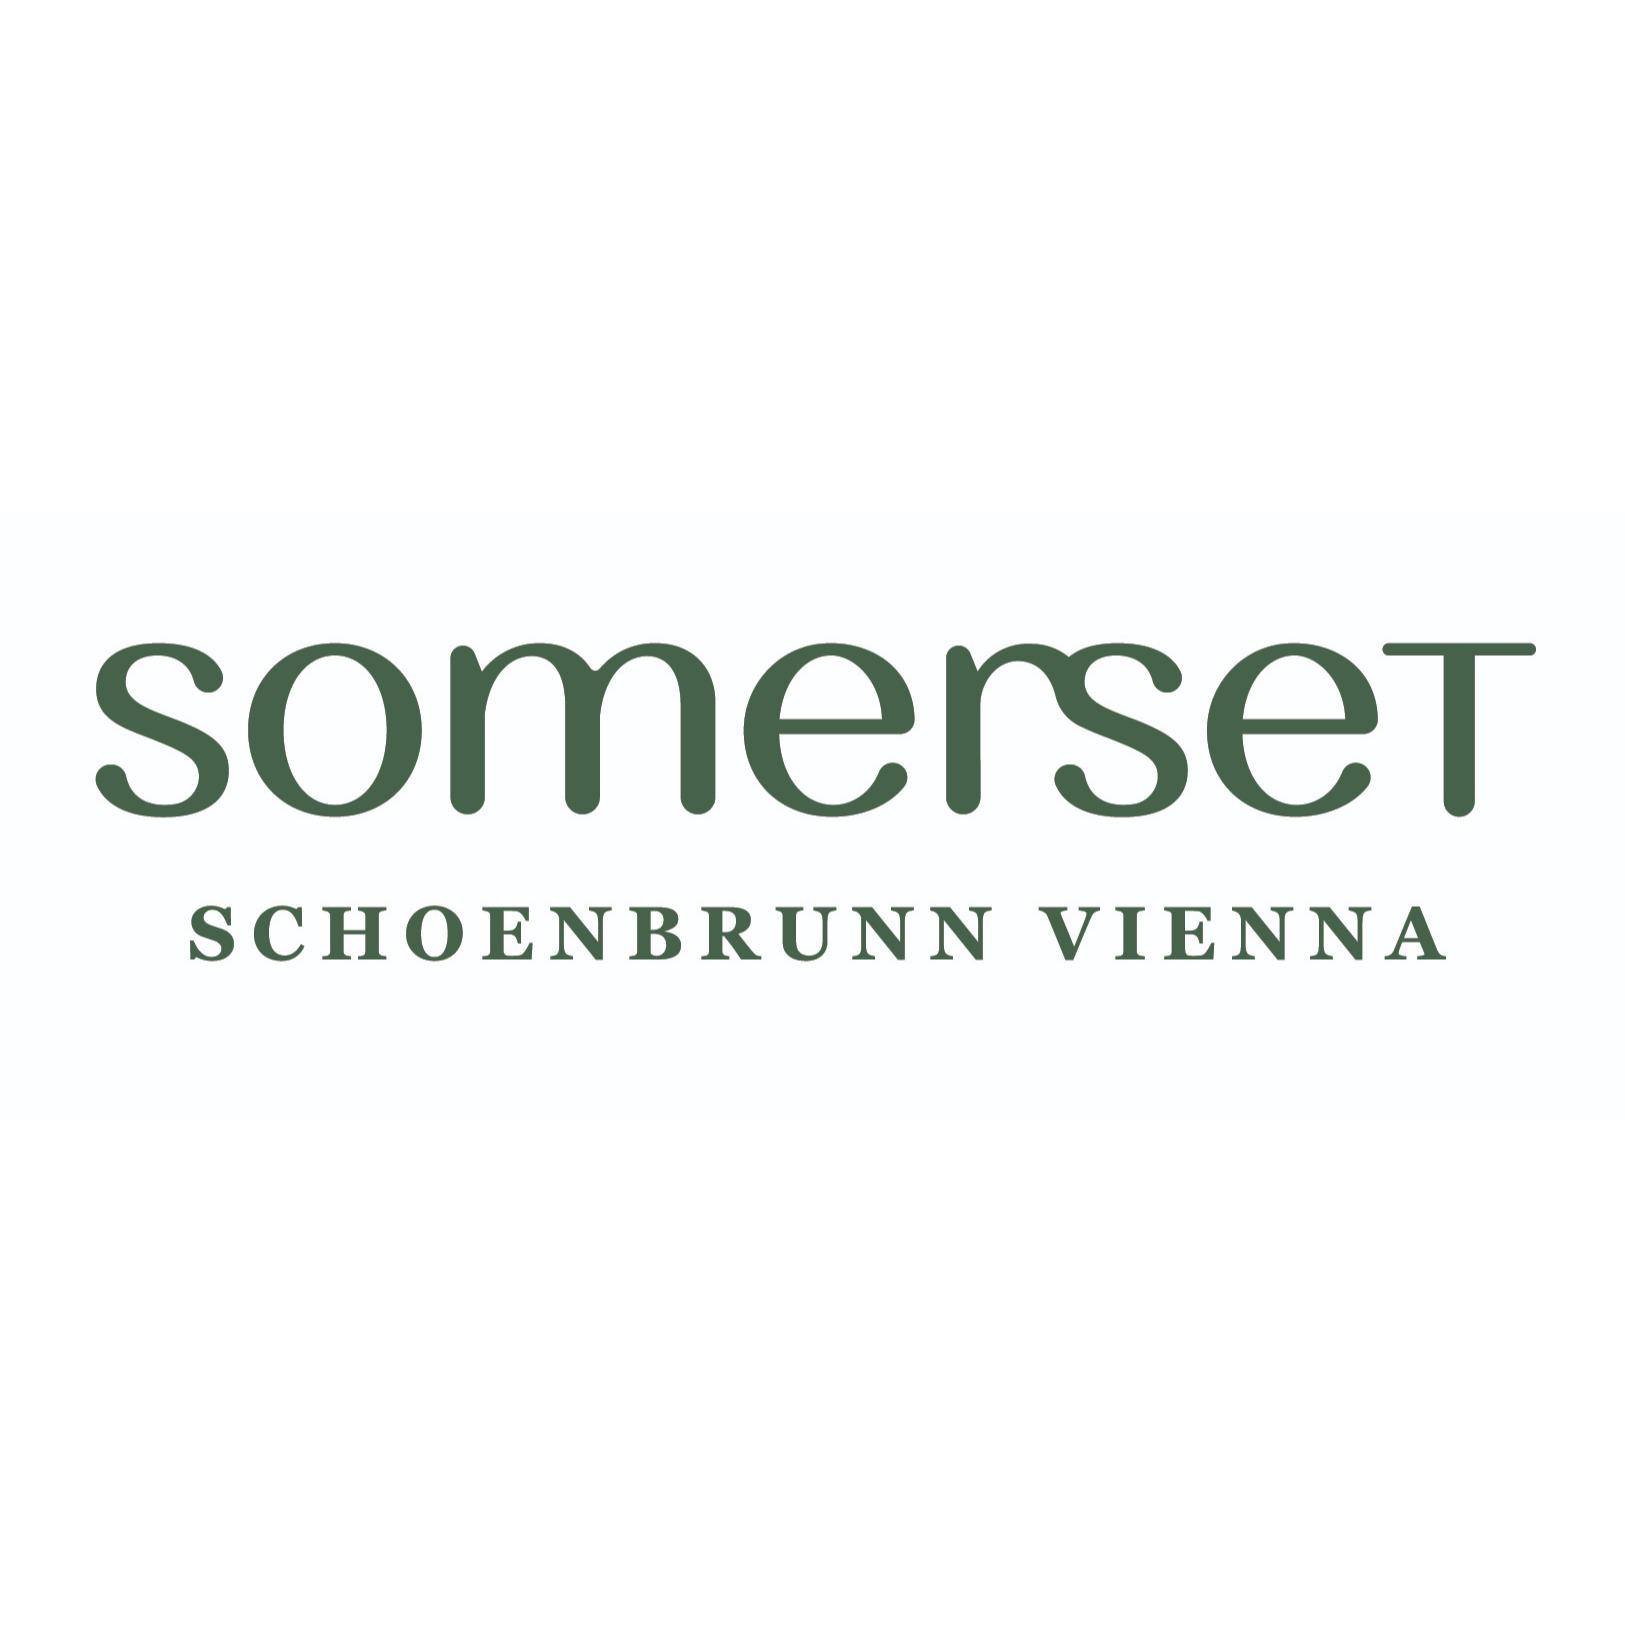 Somerset Schoenbrunn Vienna Logo